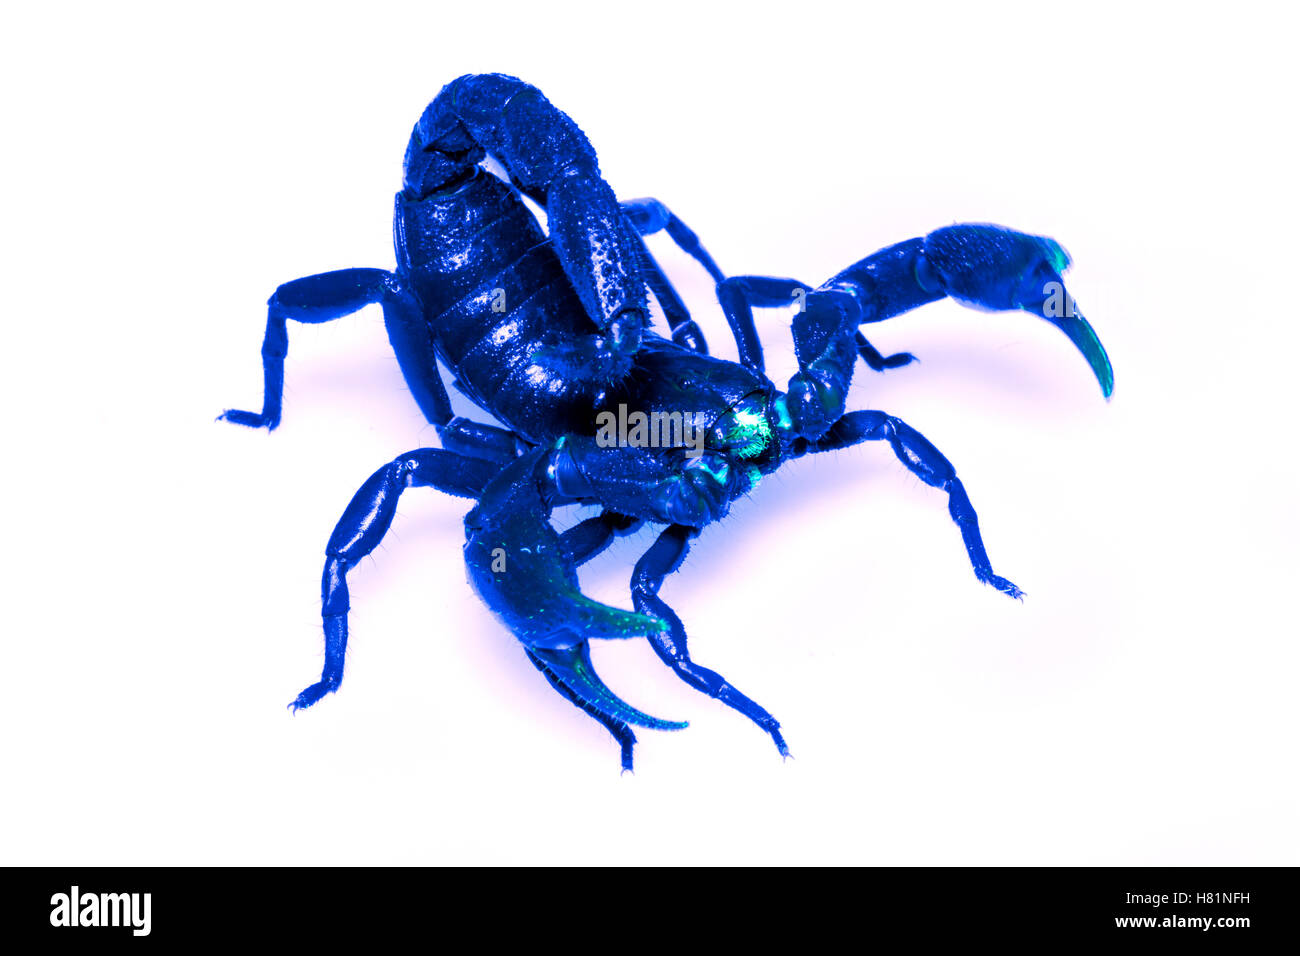 Scorpion (Brotheas sp) in defensive posture seen under ultraviolet ...